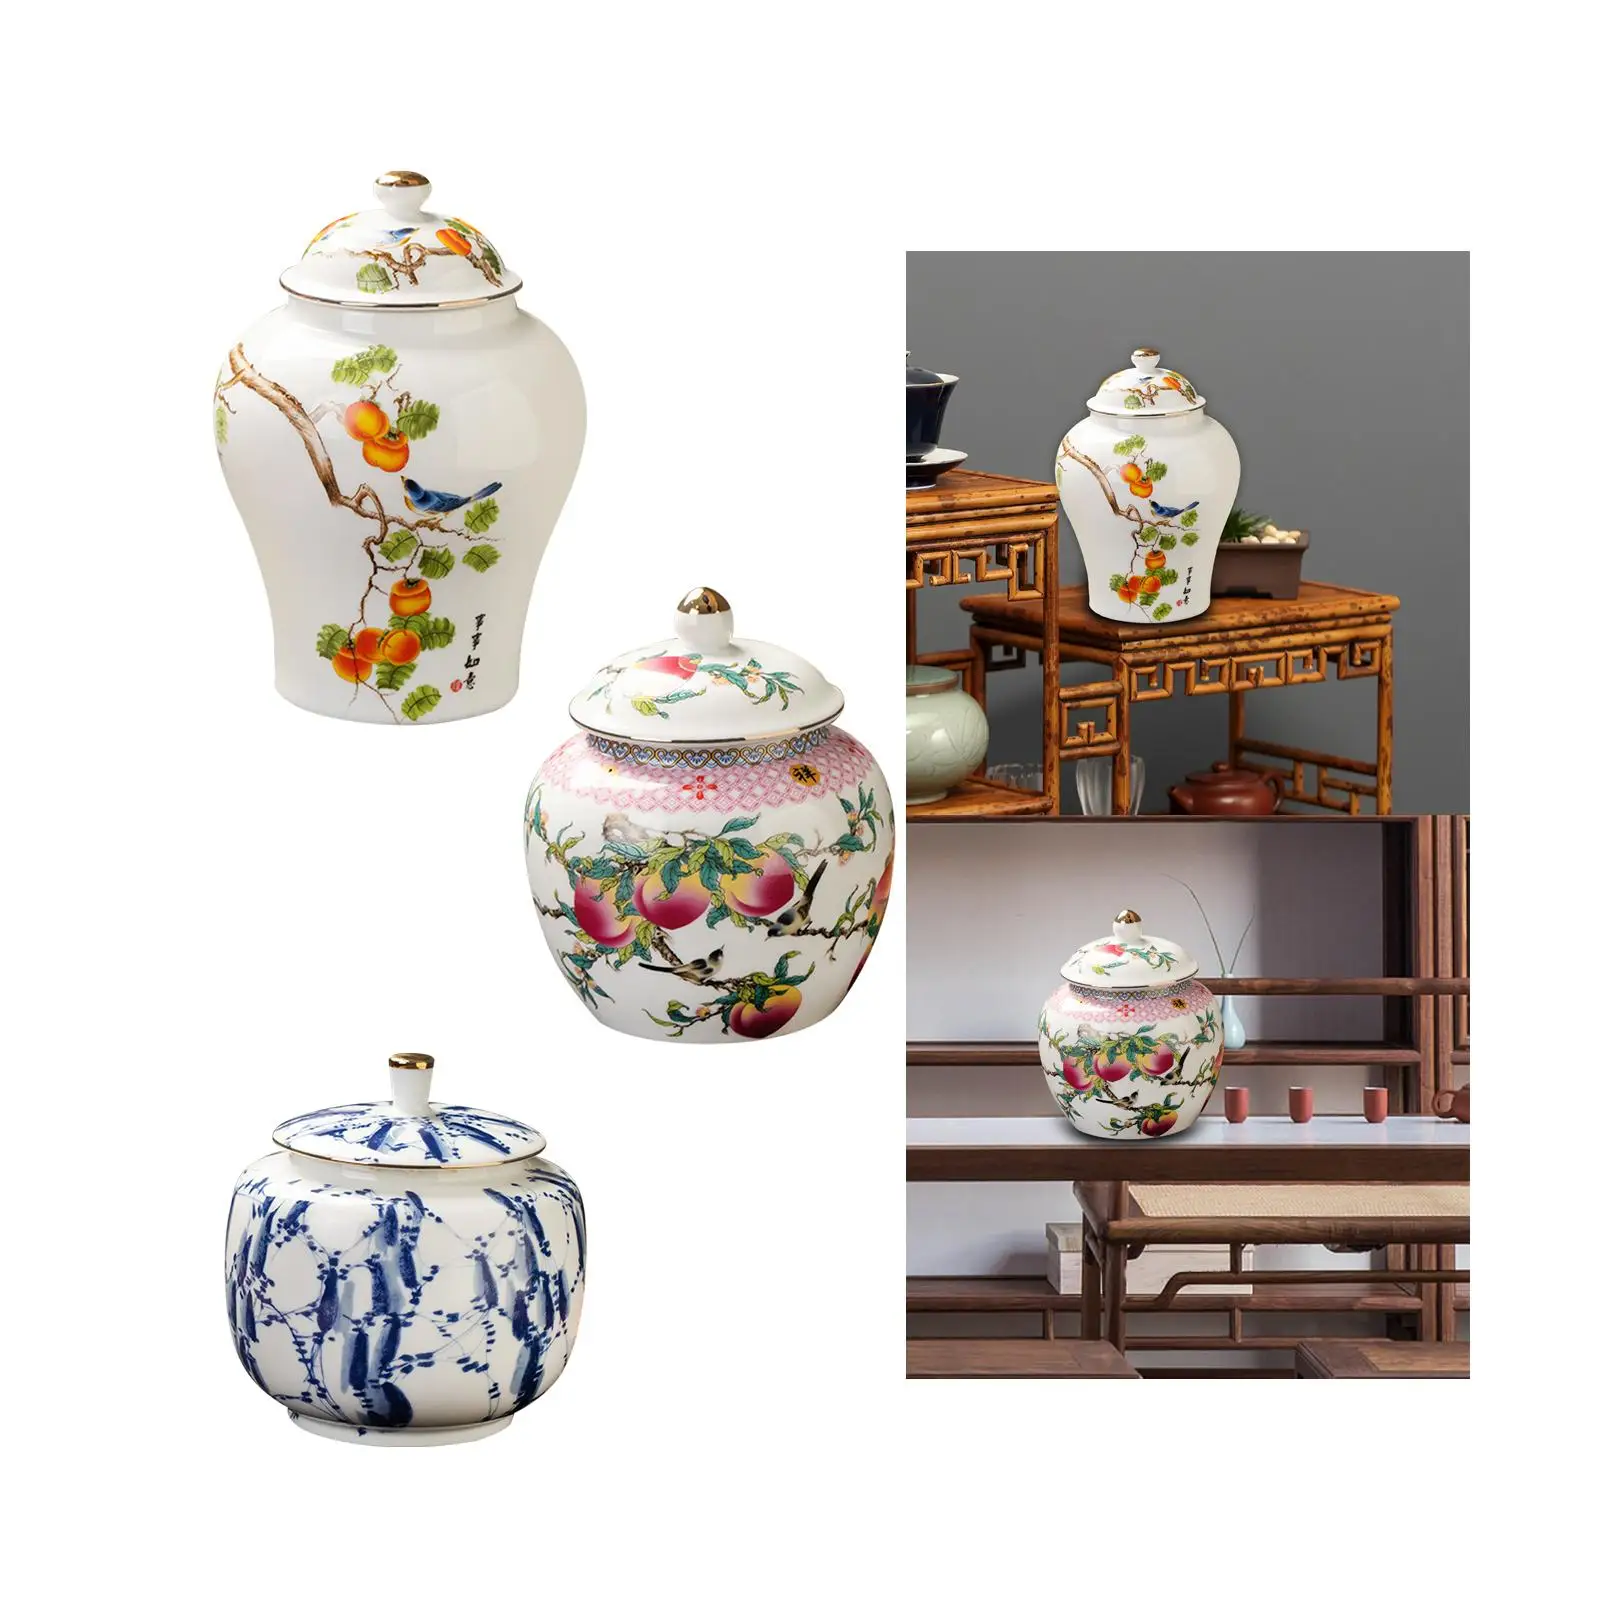 Porcelain Temple Jar Delicate Traditional Ceramic Ginger Jar with Lid Decorative Vase for Desktop Living Room Home Decor